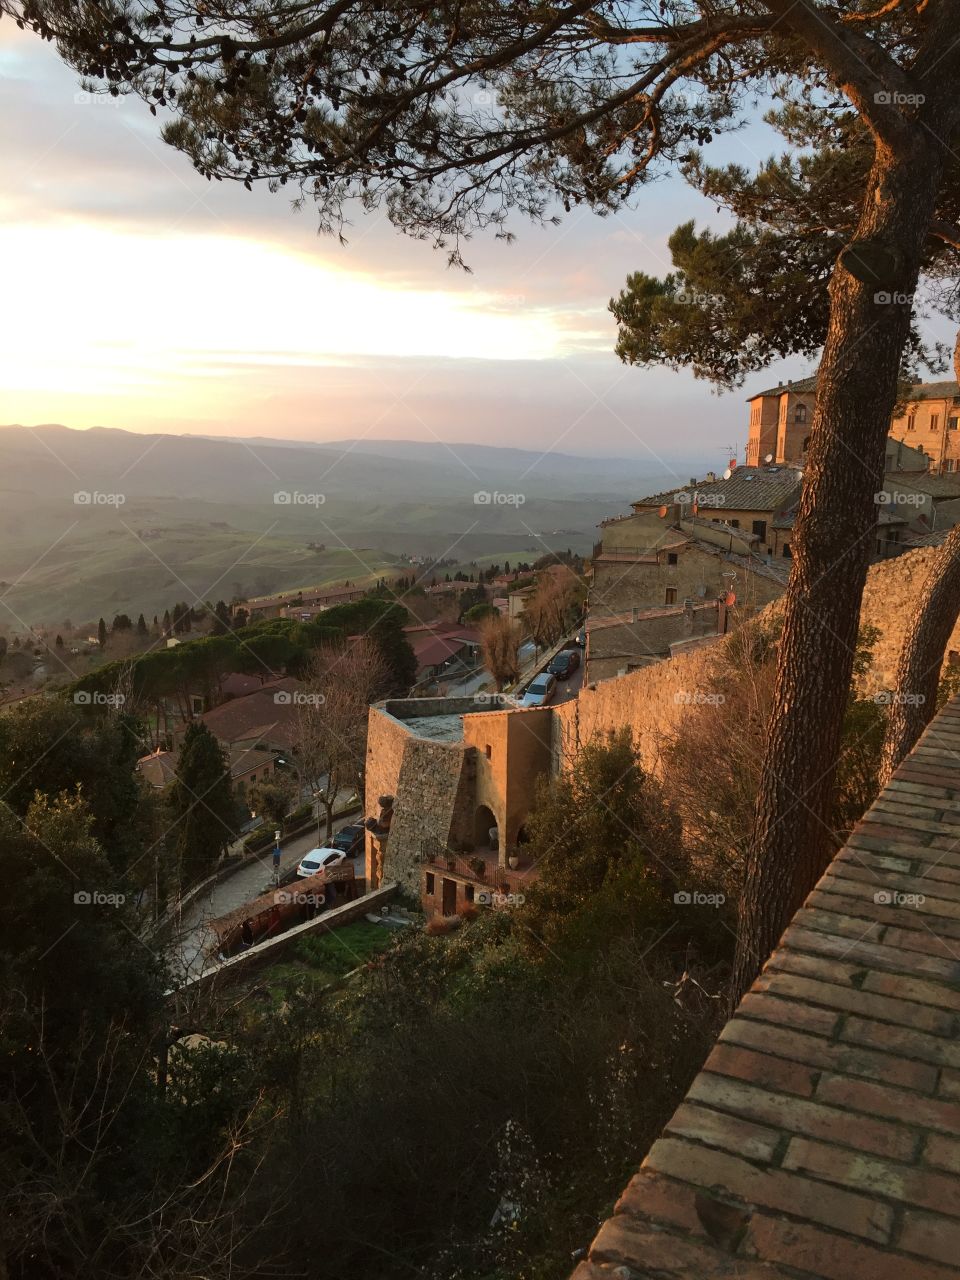 Sunset in Volterra - Italy